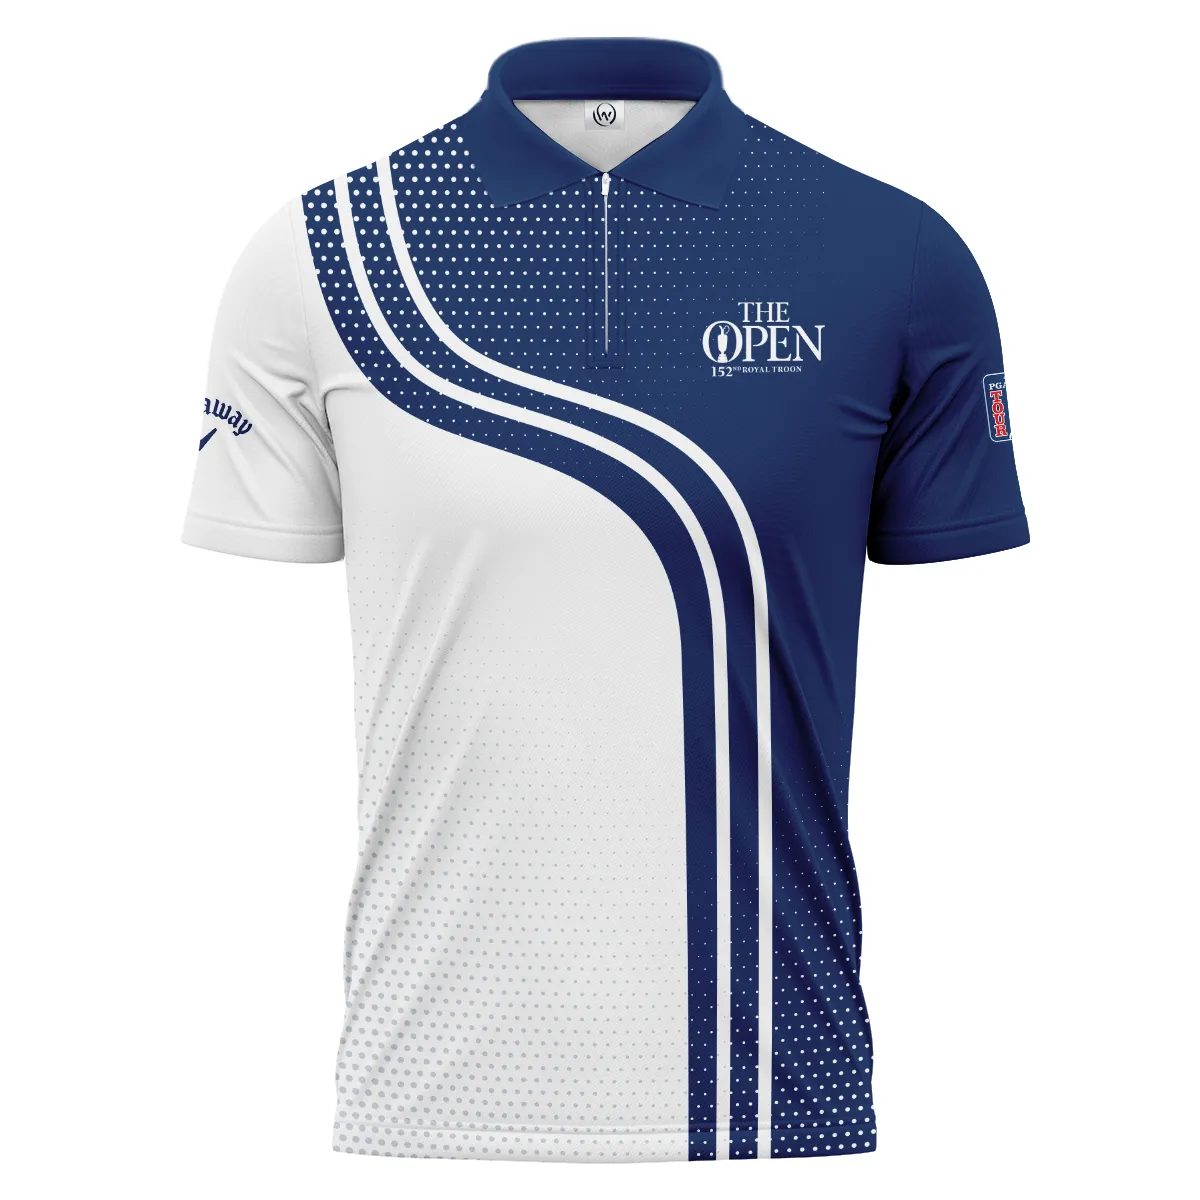 Golf Blue Mix White Sport 152nd Open Championship Pinehurst Callaway Zipper Hoodie Shirt All Over Prints QTTOP1806A1CLWZHD